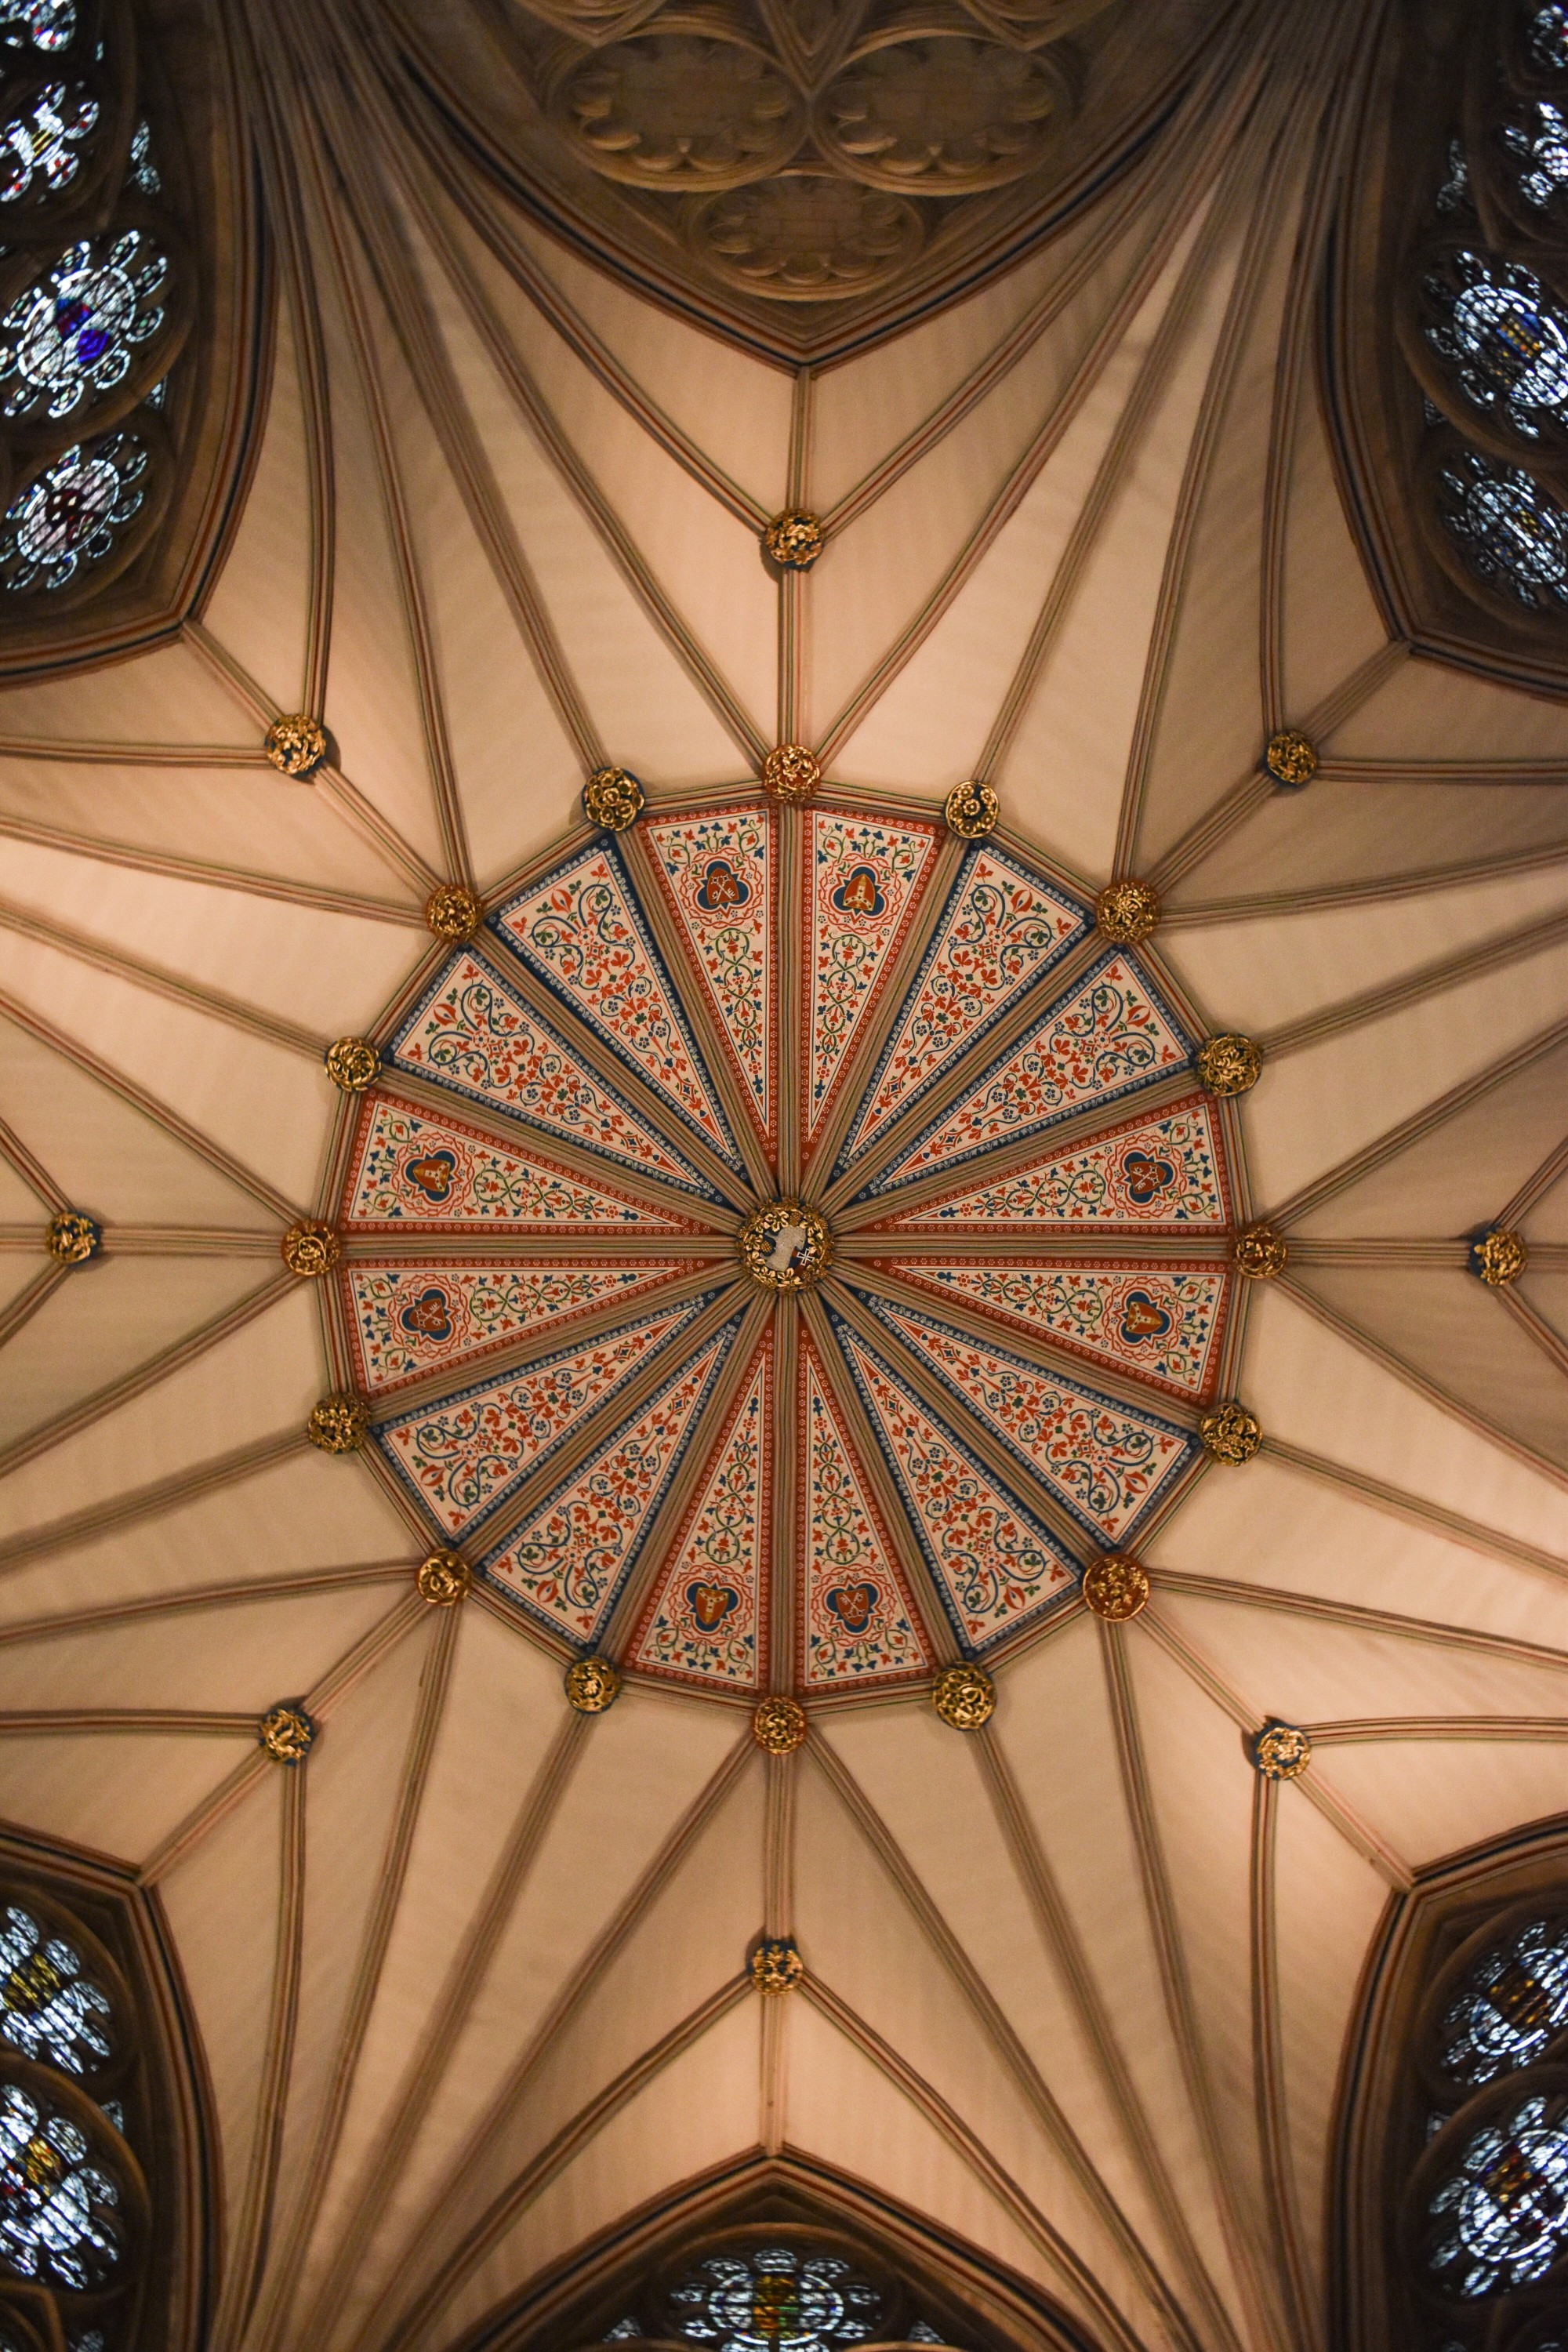 Inside York Minster<br/> <br/>
Nella cattedrale di York